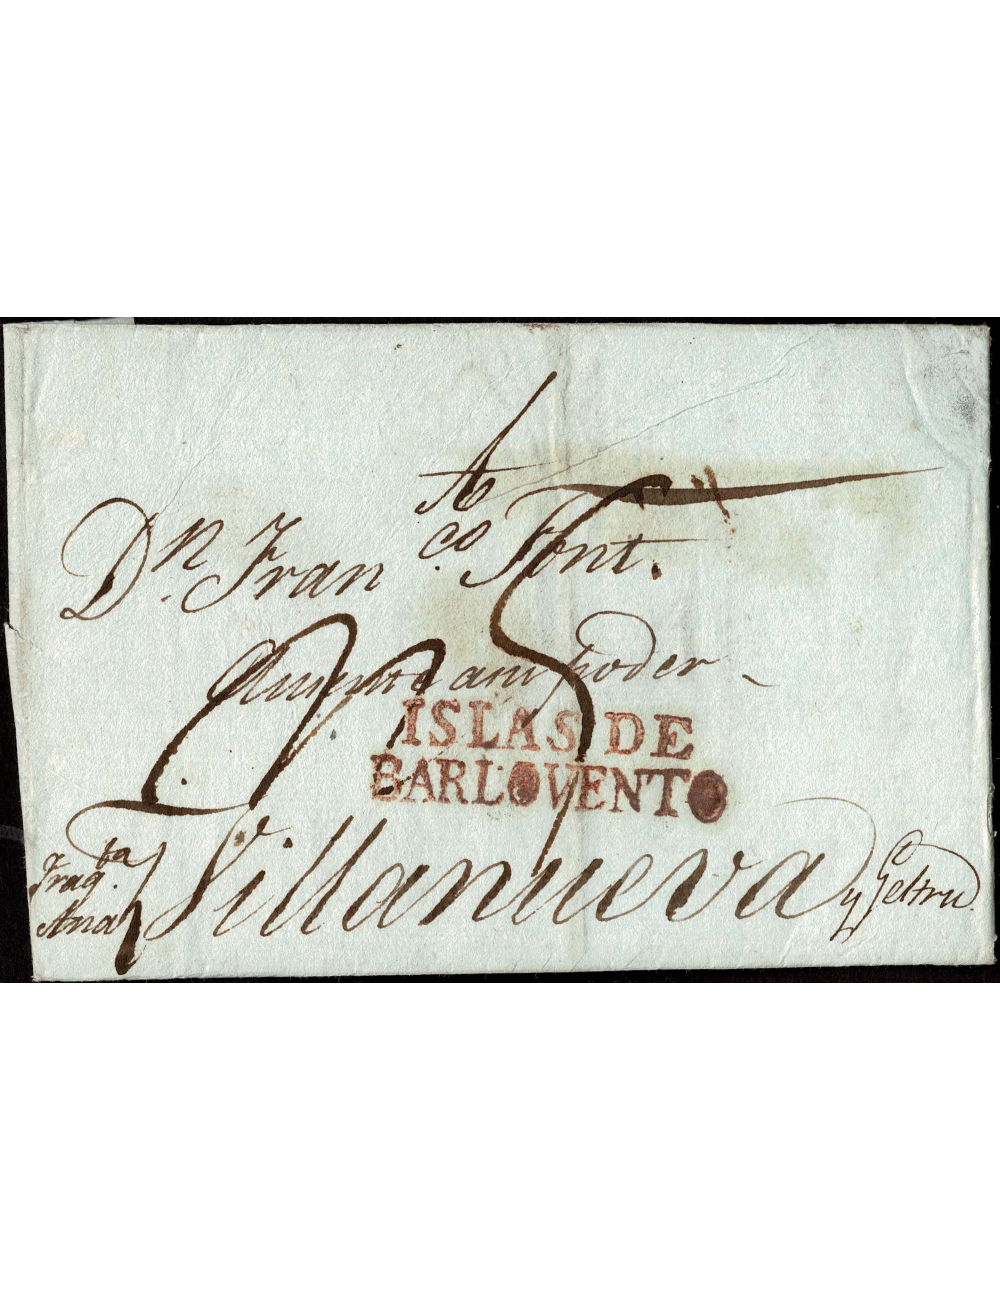 1814 (4 OCT) La Habana a Vilanova y Geltrú. Sobrescrito con la marca marca “ISLAS DE BARLOVENTO” aplicado en rojo de Cádiz. Port